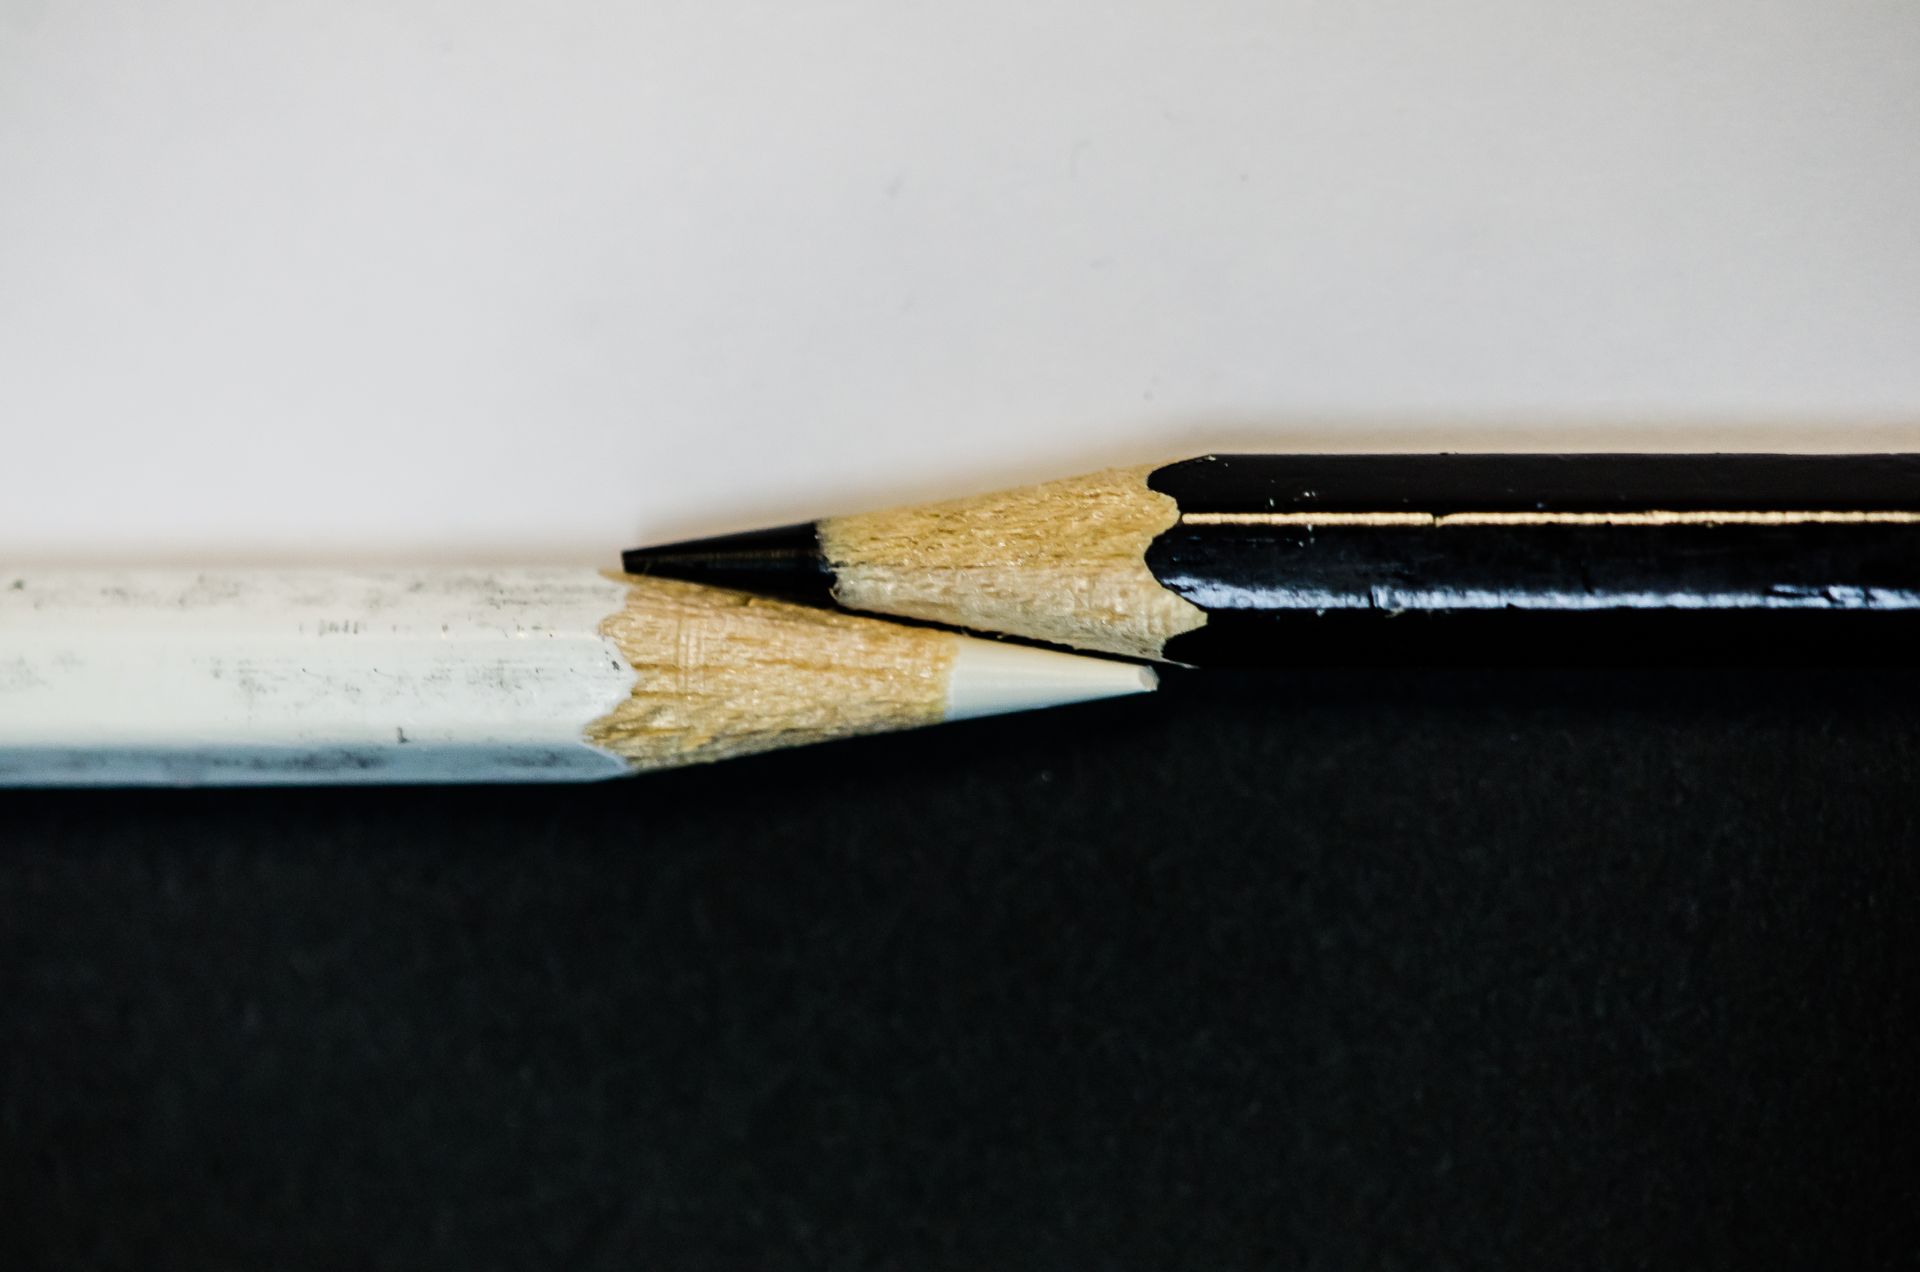 Dois lápis pretos e brancos estão sentados um ao lado do outro em uma superfície preta.